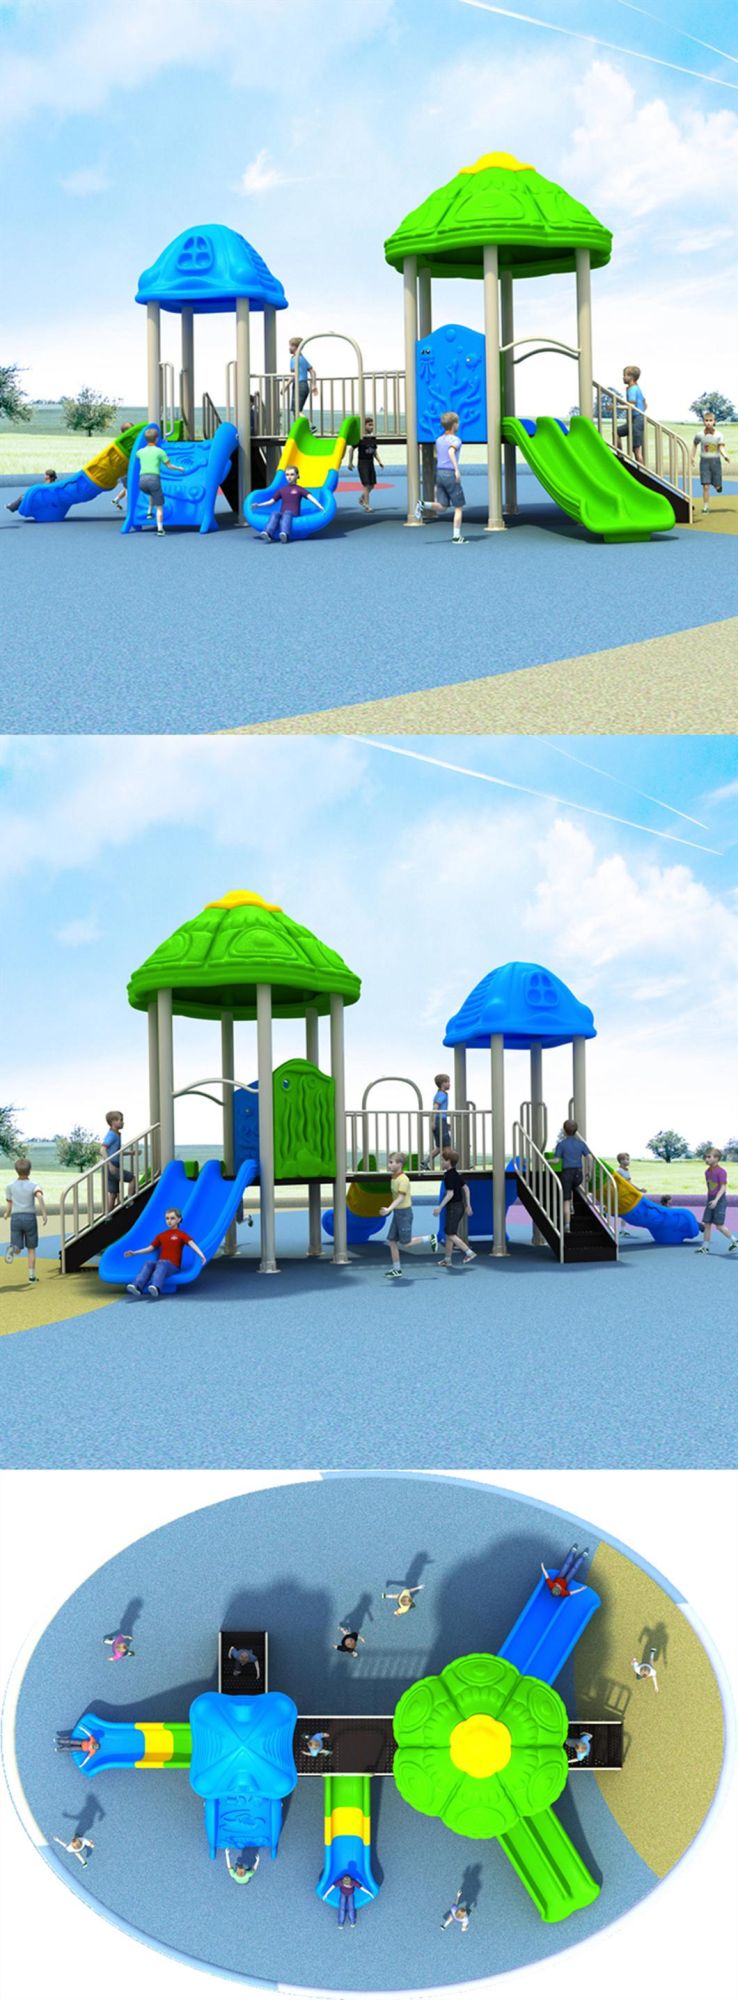 Fun Outdoor Playground Slides Kindergarten Kids Amusement Park Equipment 487b